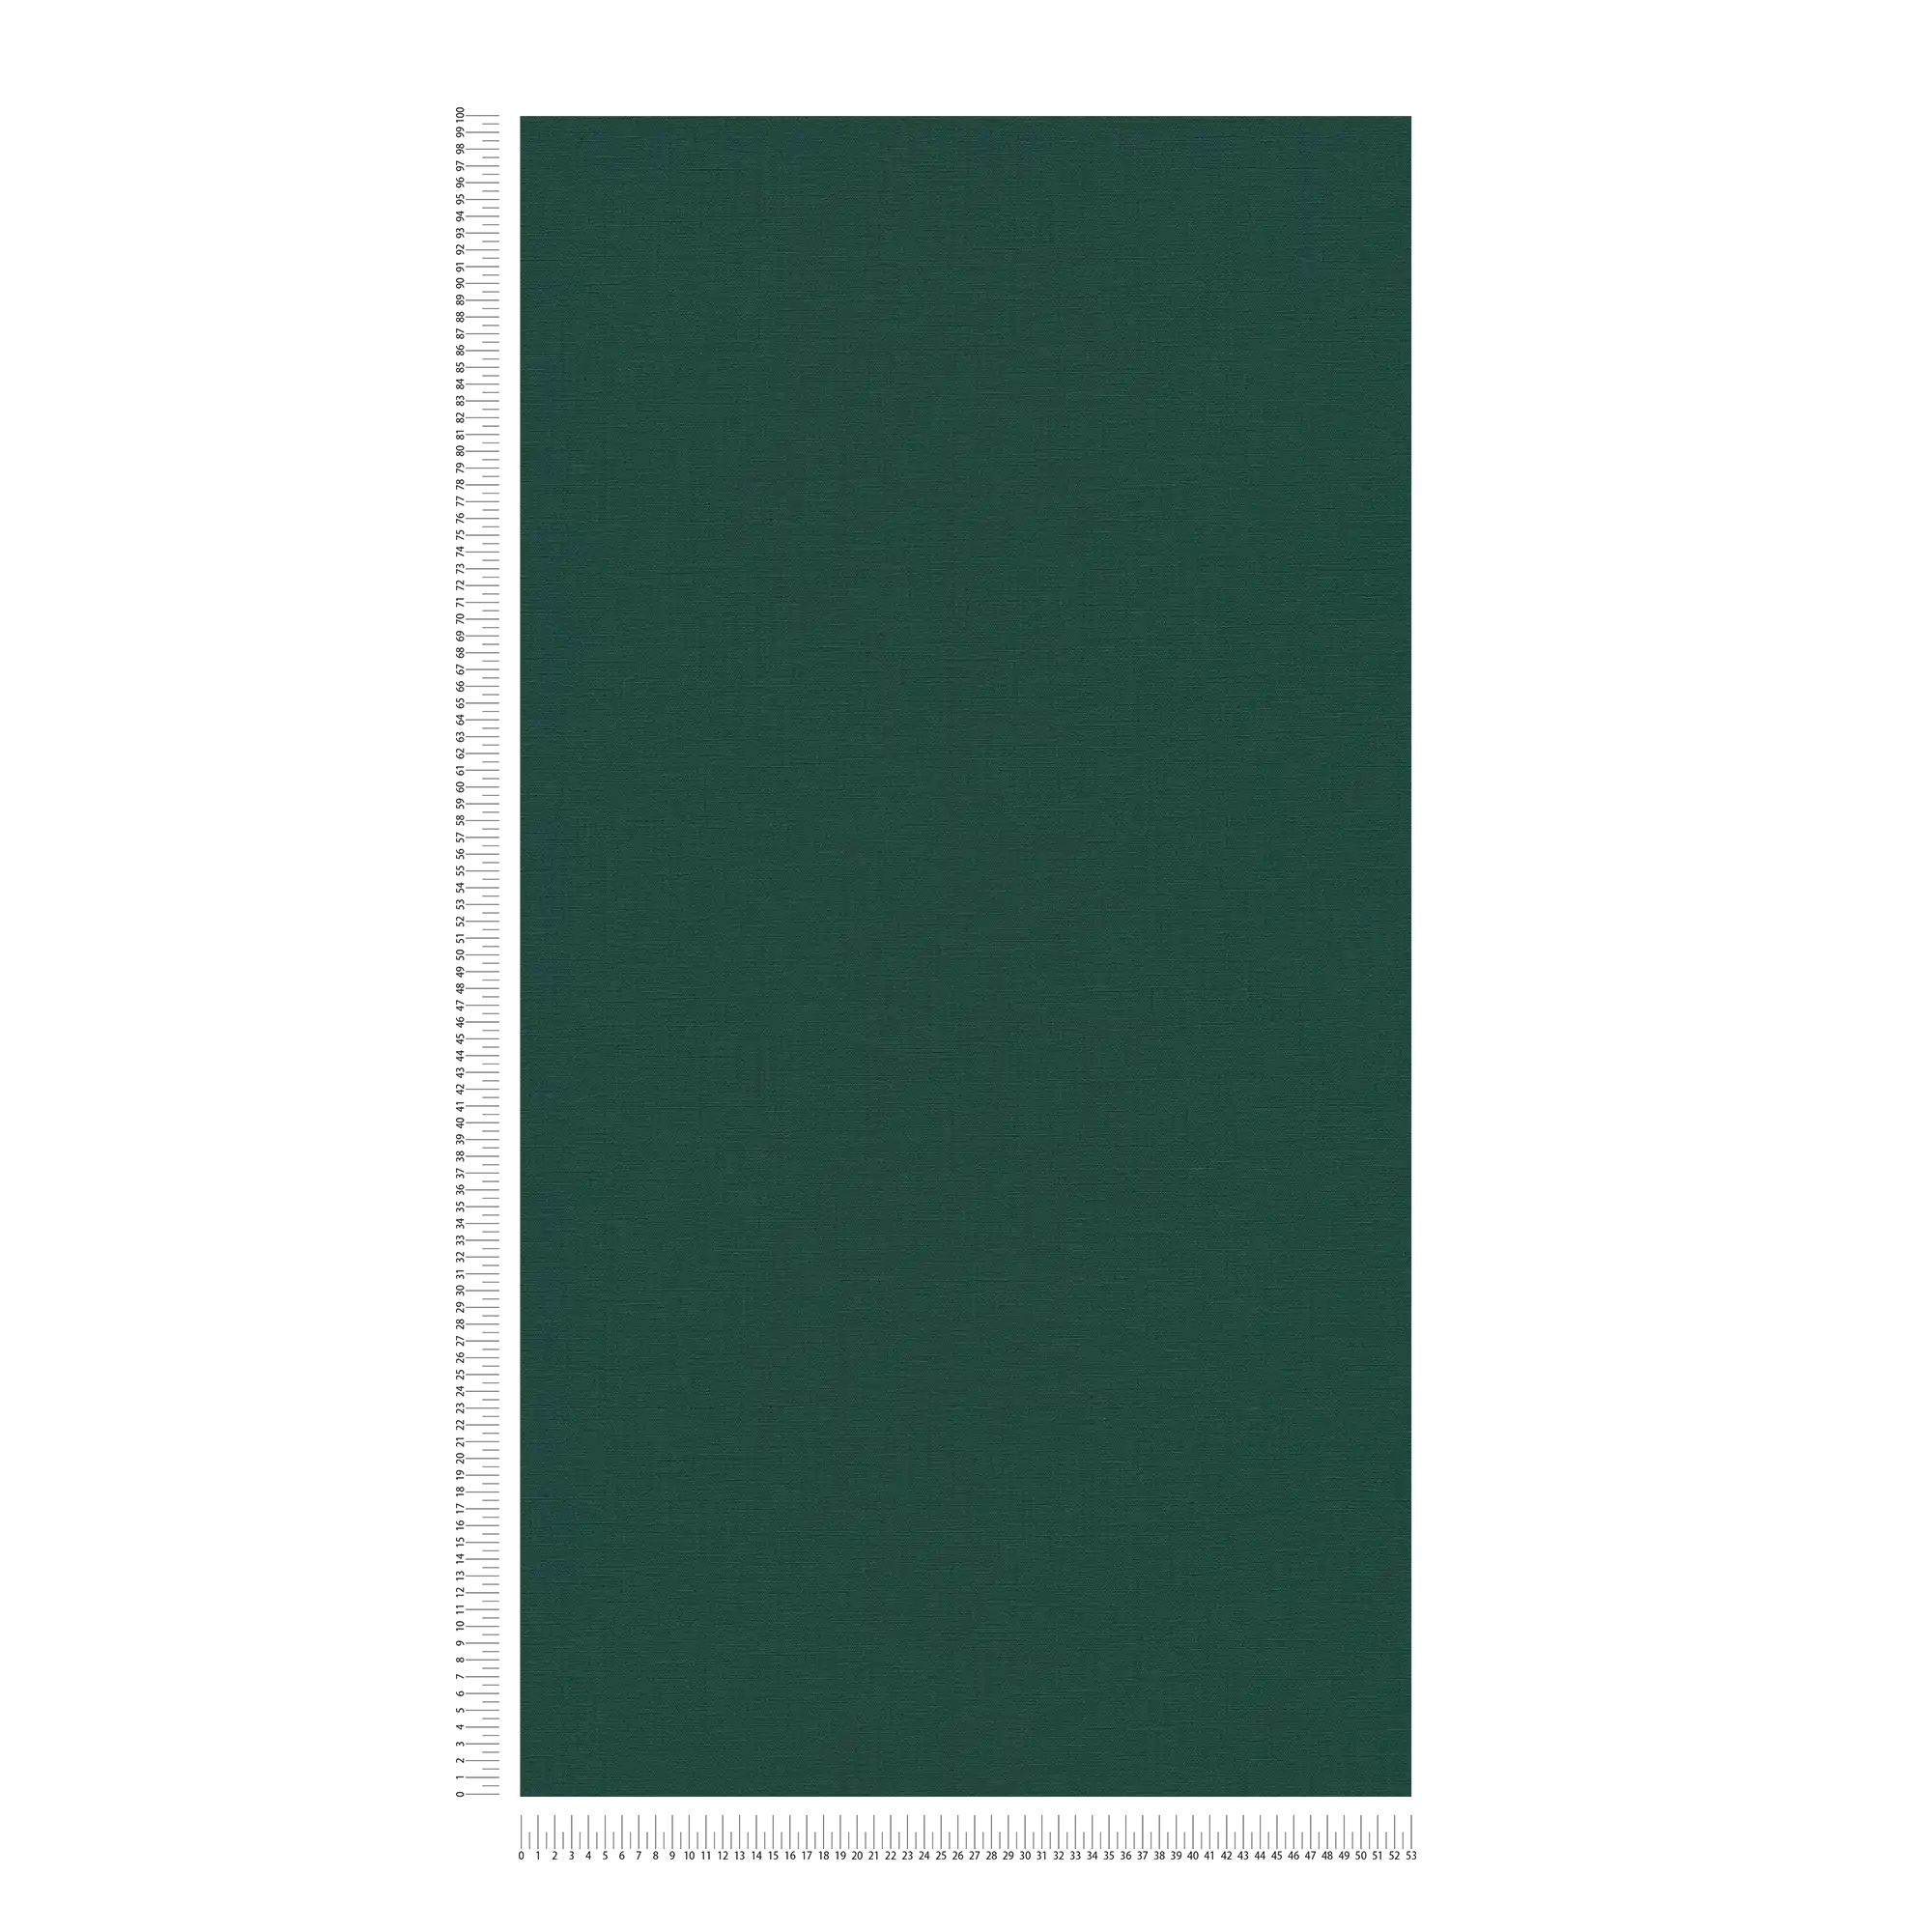             Groen vliesbehang met textielstructuur - groen
        